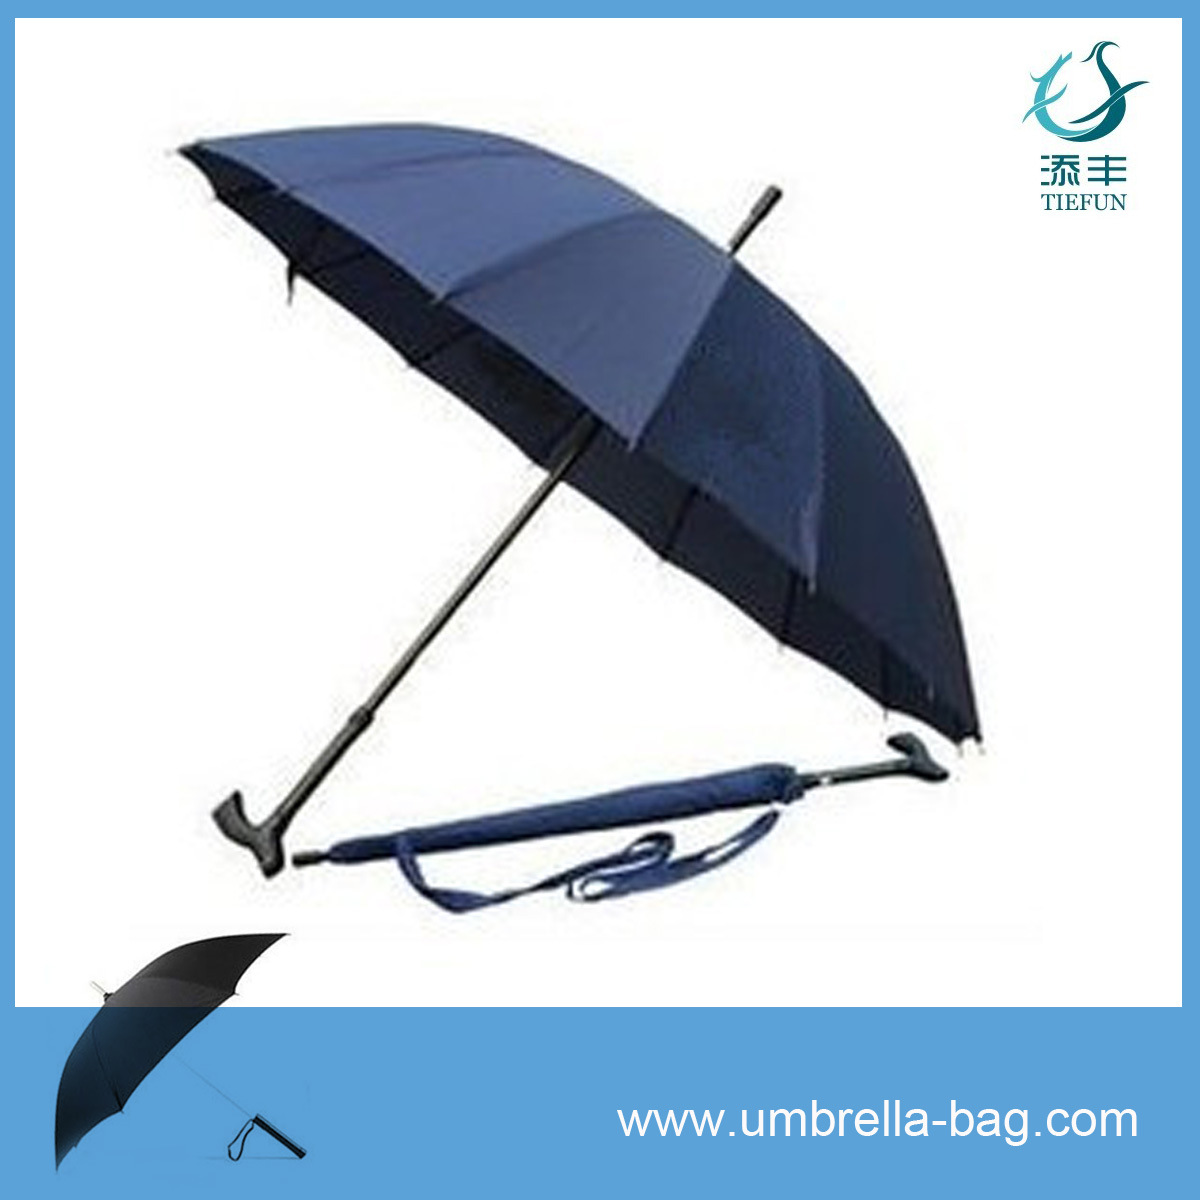 【专业订做时尚雨伞 性价比高 是您最佳的选择